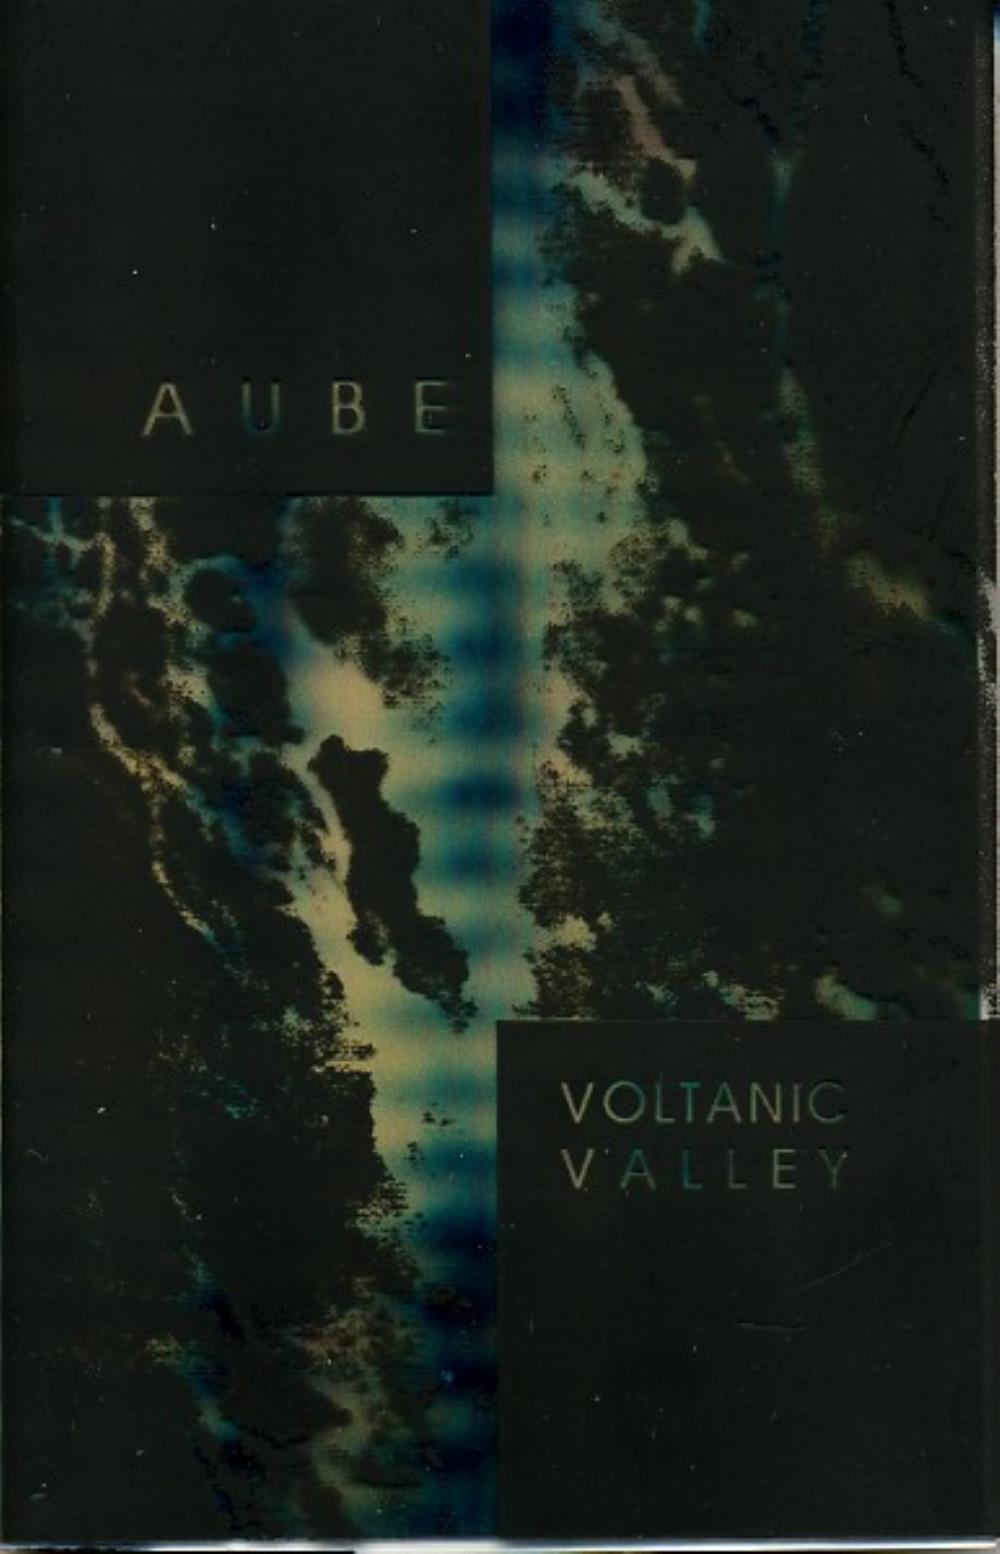 Aube Voltanic Valley album cover